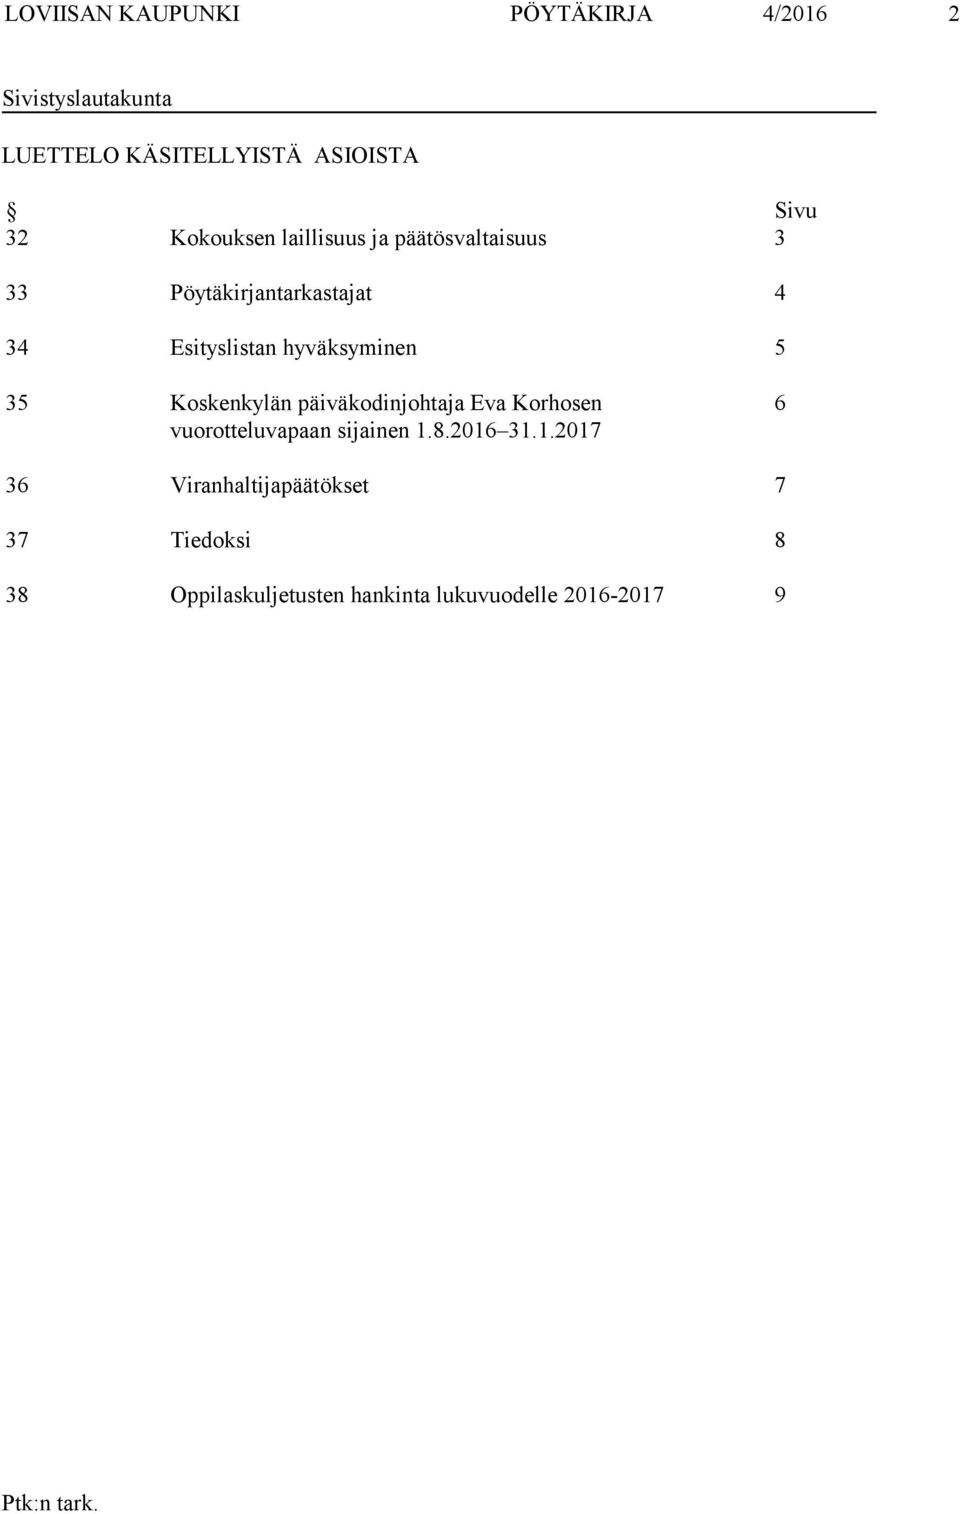 hyväksyminen 5 35 Koskenkylän päiväkodinjohtaja Eva Korhosen vuorotteluvapaan sijainen 1.8.